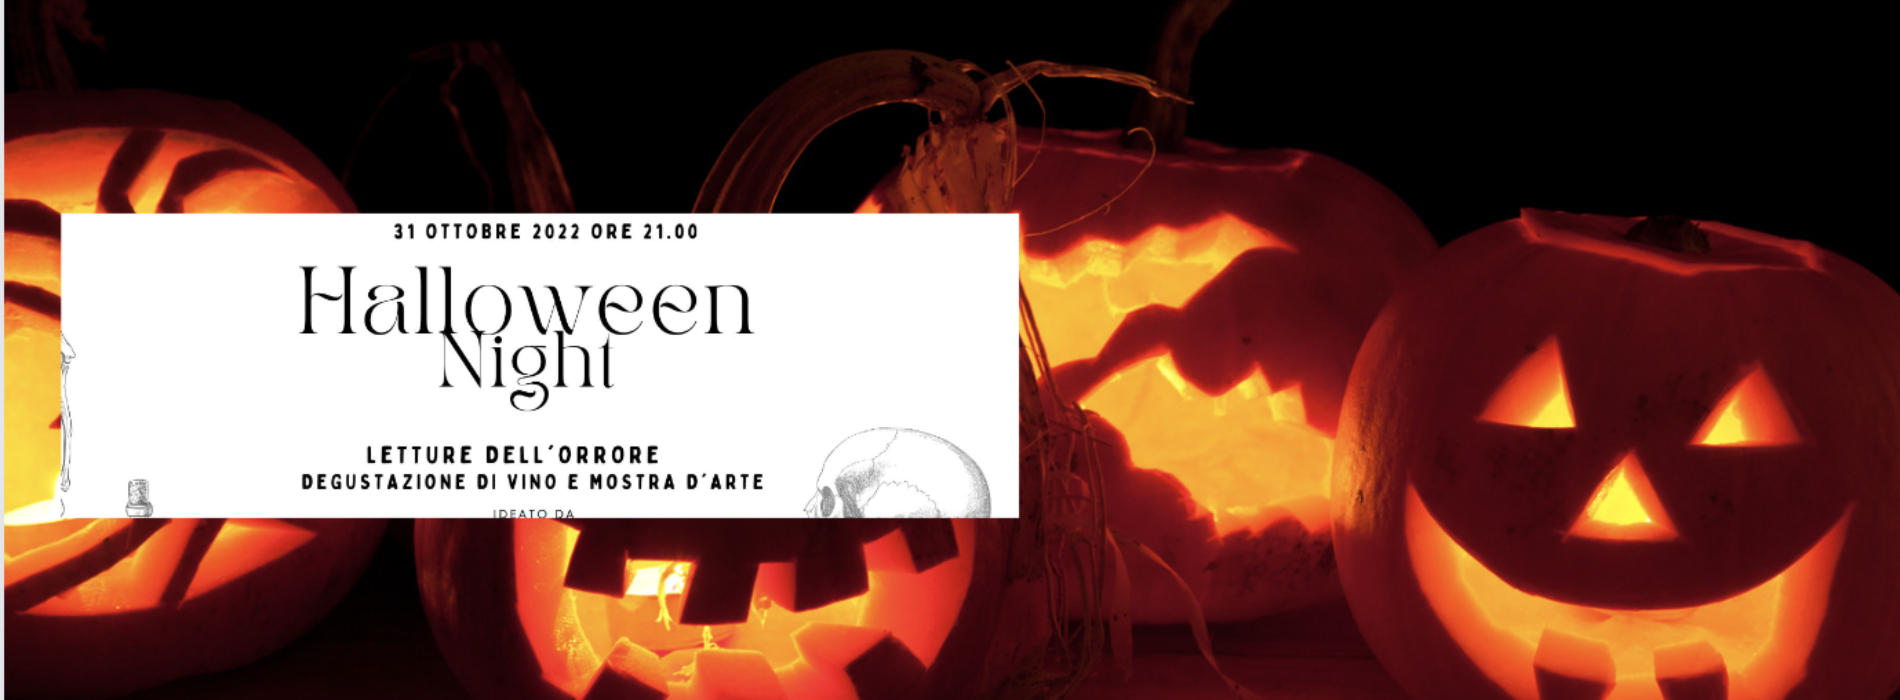 Halloween night, da Alterum tra letture, opere e degustazione